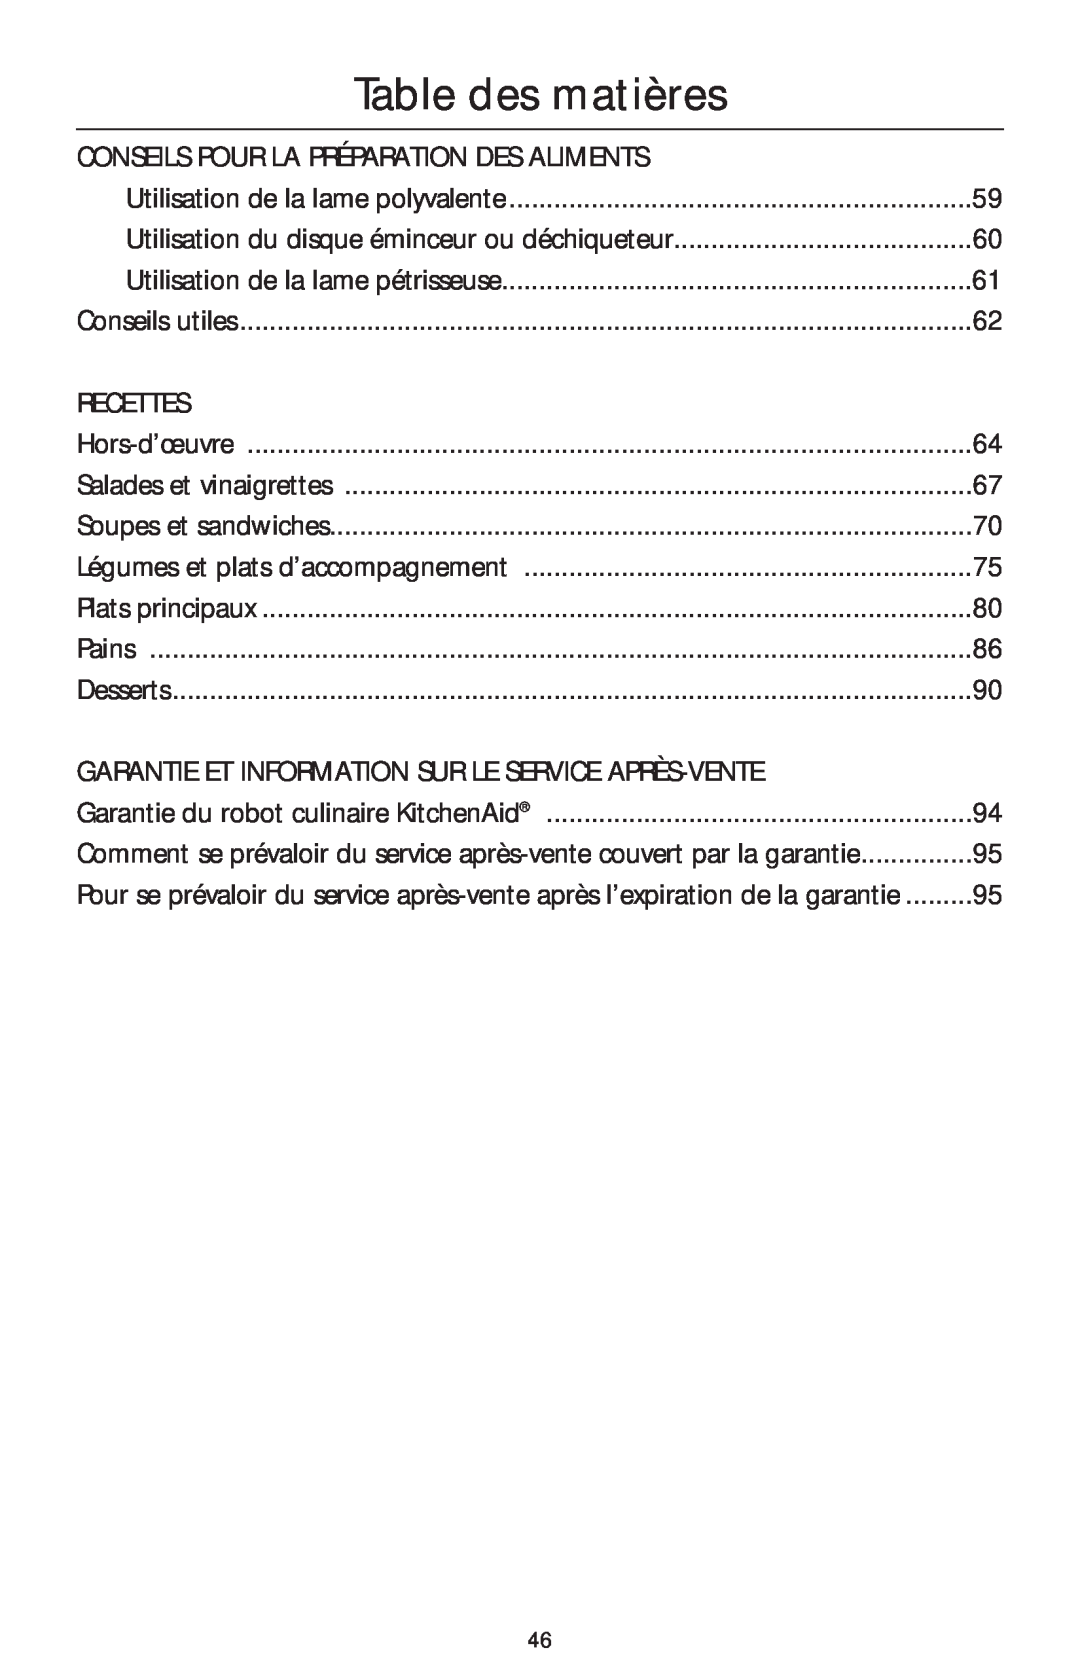 KitchenAid 4KFP740 manual Table des matières, Conseils Pour La Préparation Des Aliments, Recettes 